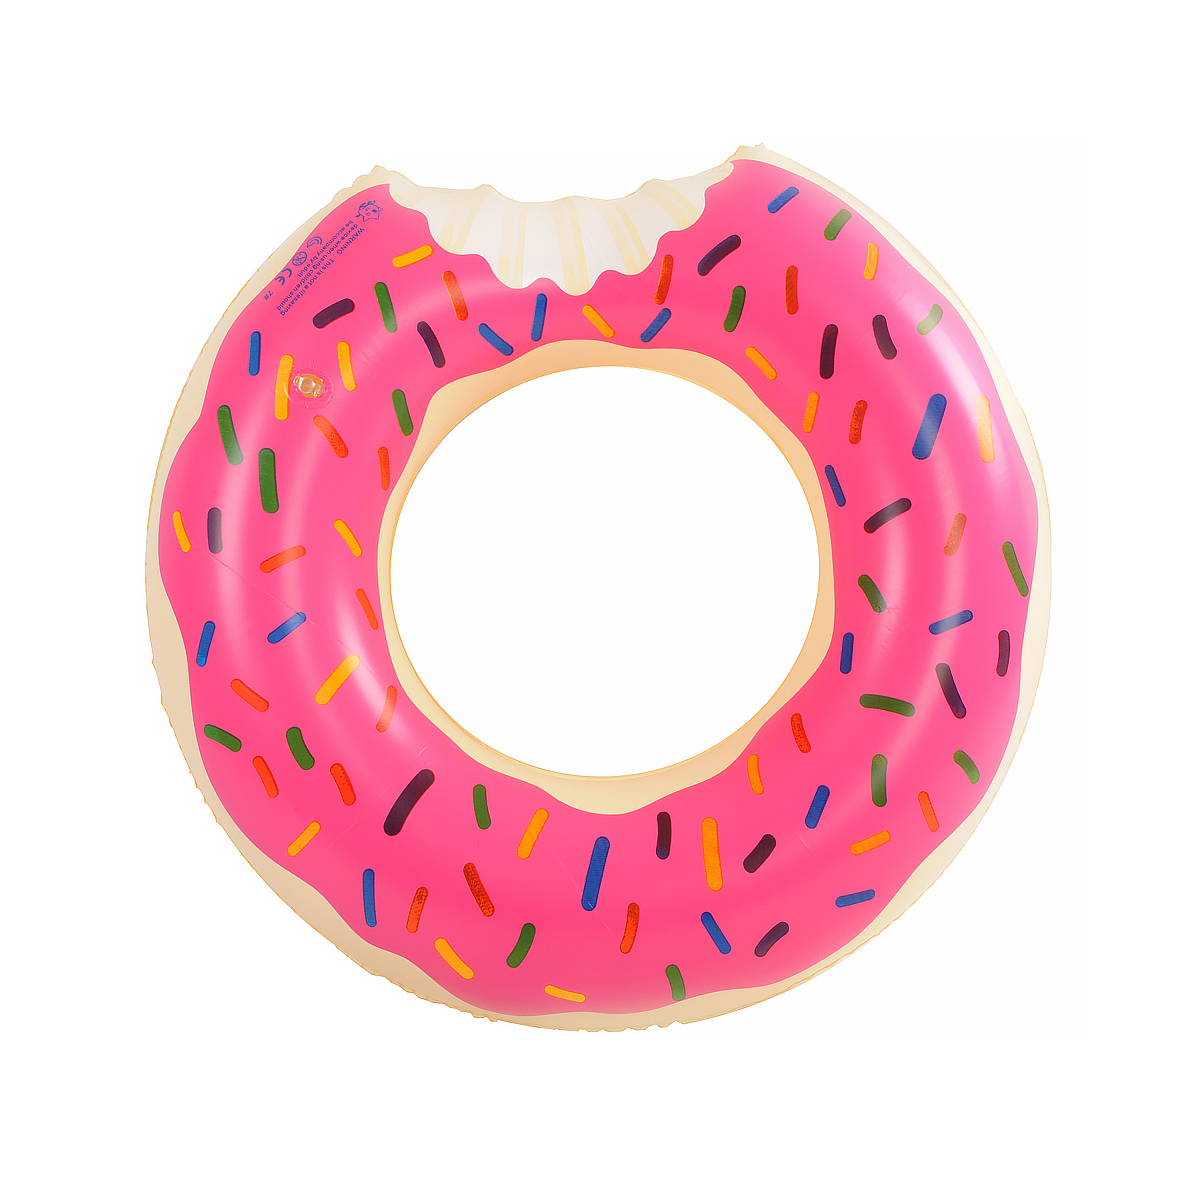 Надувной круг для для плавания GoodStore24 Пончик 60 см, розовый KR-060 круг надувной 99 см intex пончик глазурь от 3 лет 56263np